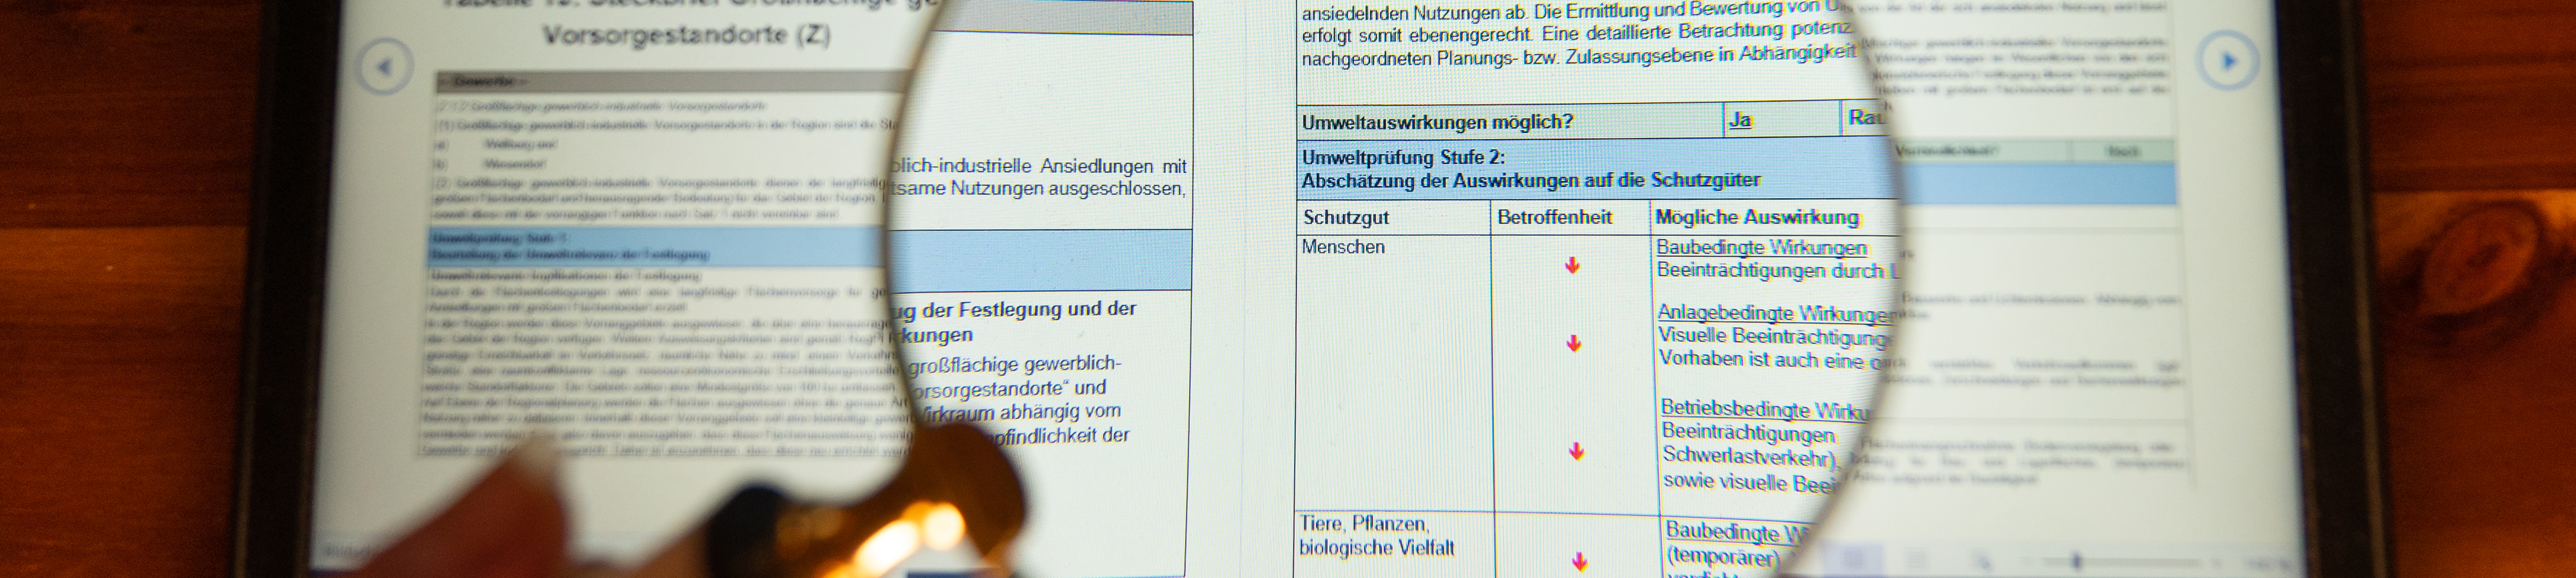 Luppe zeigt Ausschnitt eines Umweltprüfungsberichts auf dem Laptop 